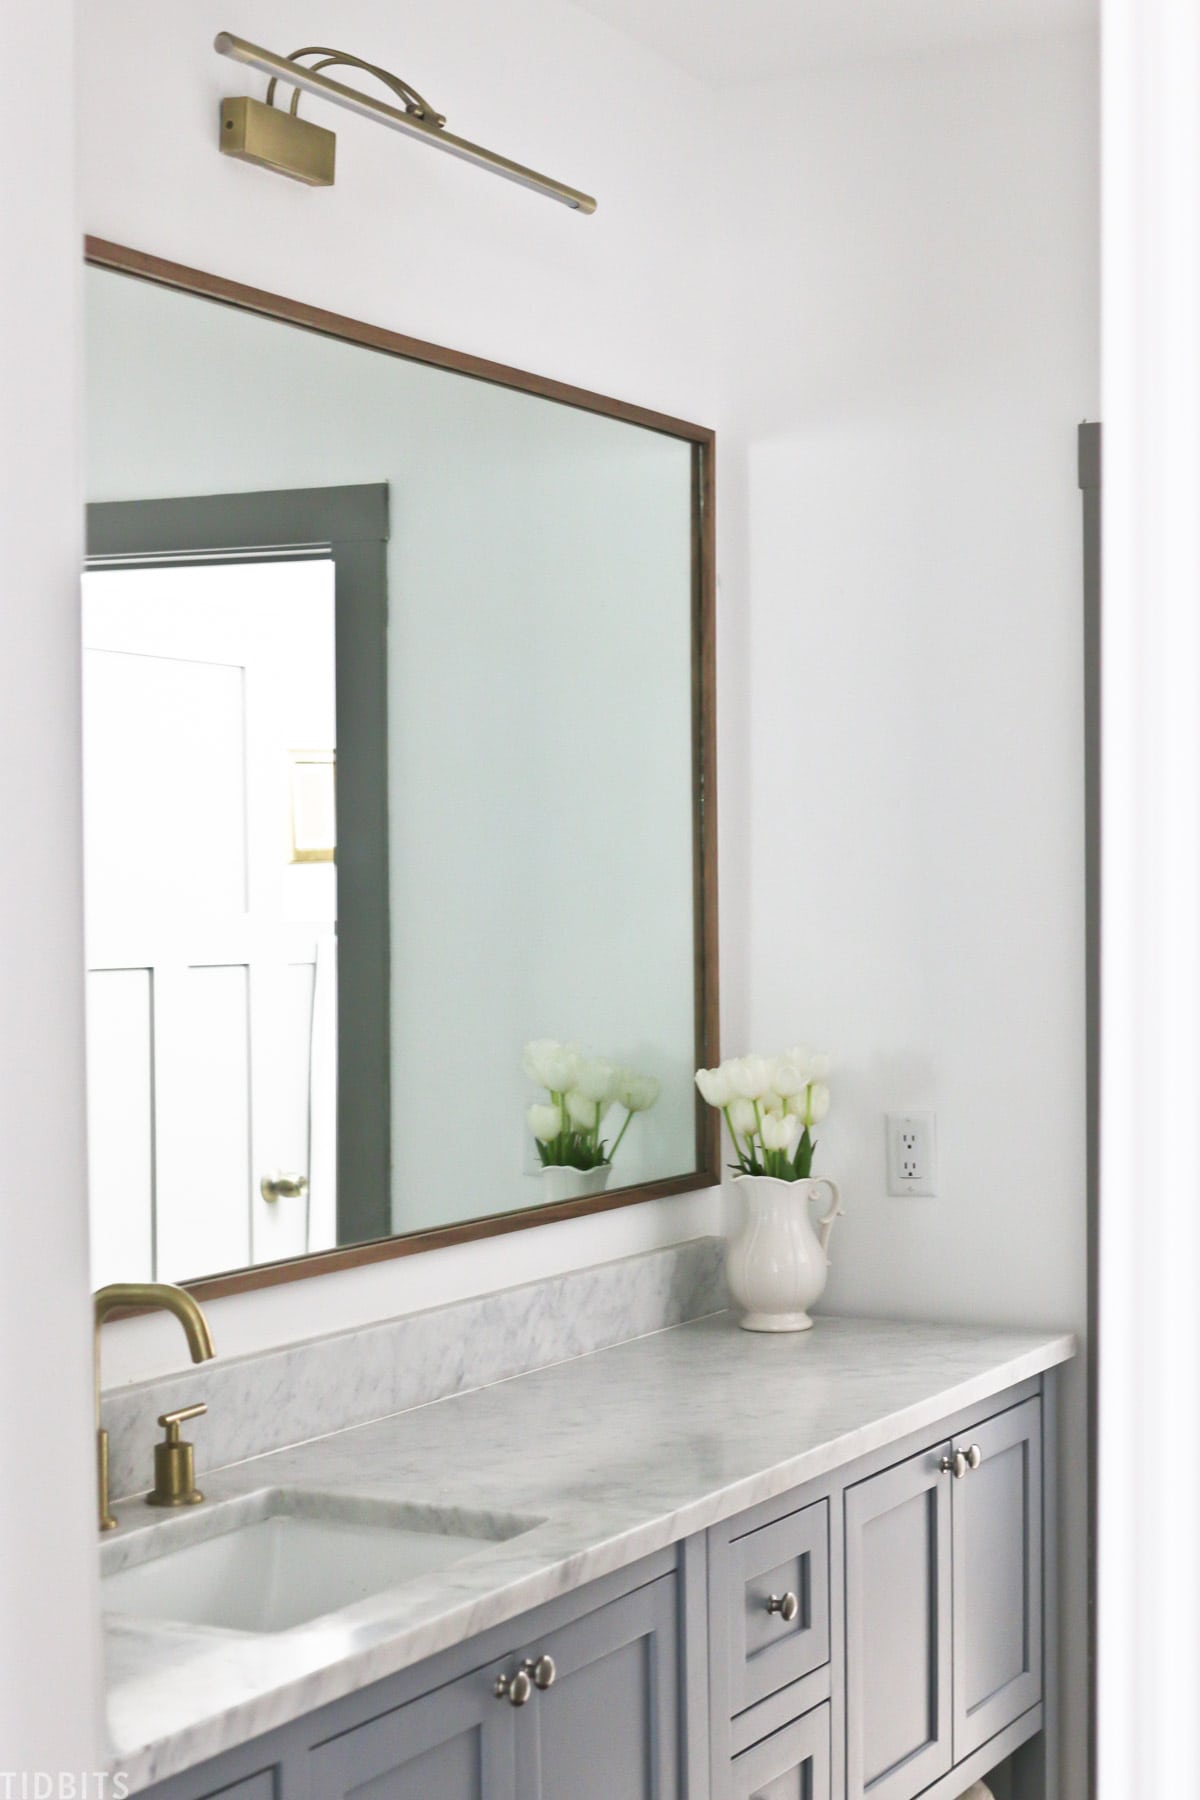 Diy Wood Mirror Frame For Bathroom, Wood Framed Bathroom Mirrors Diy